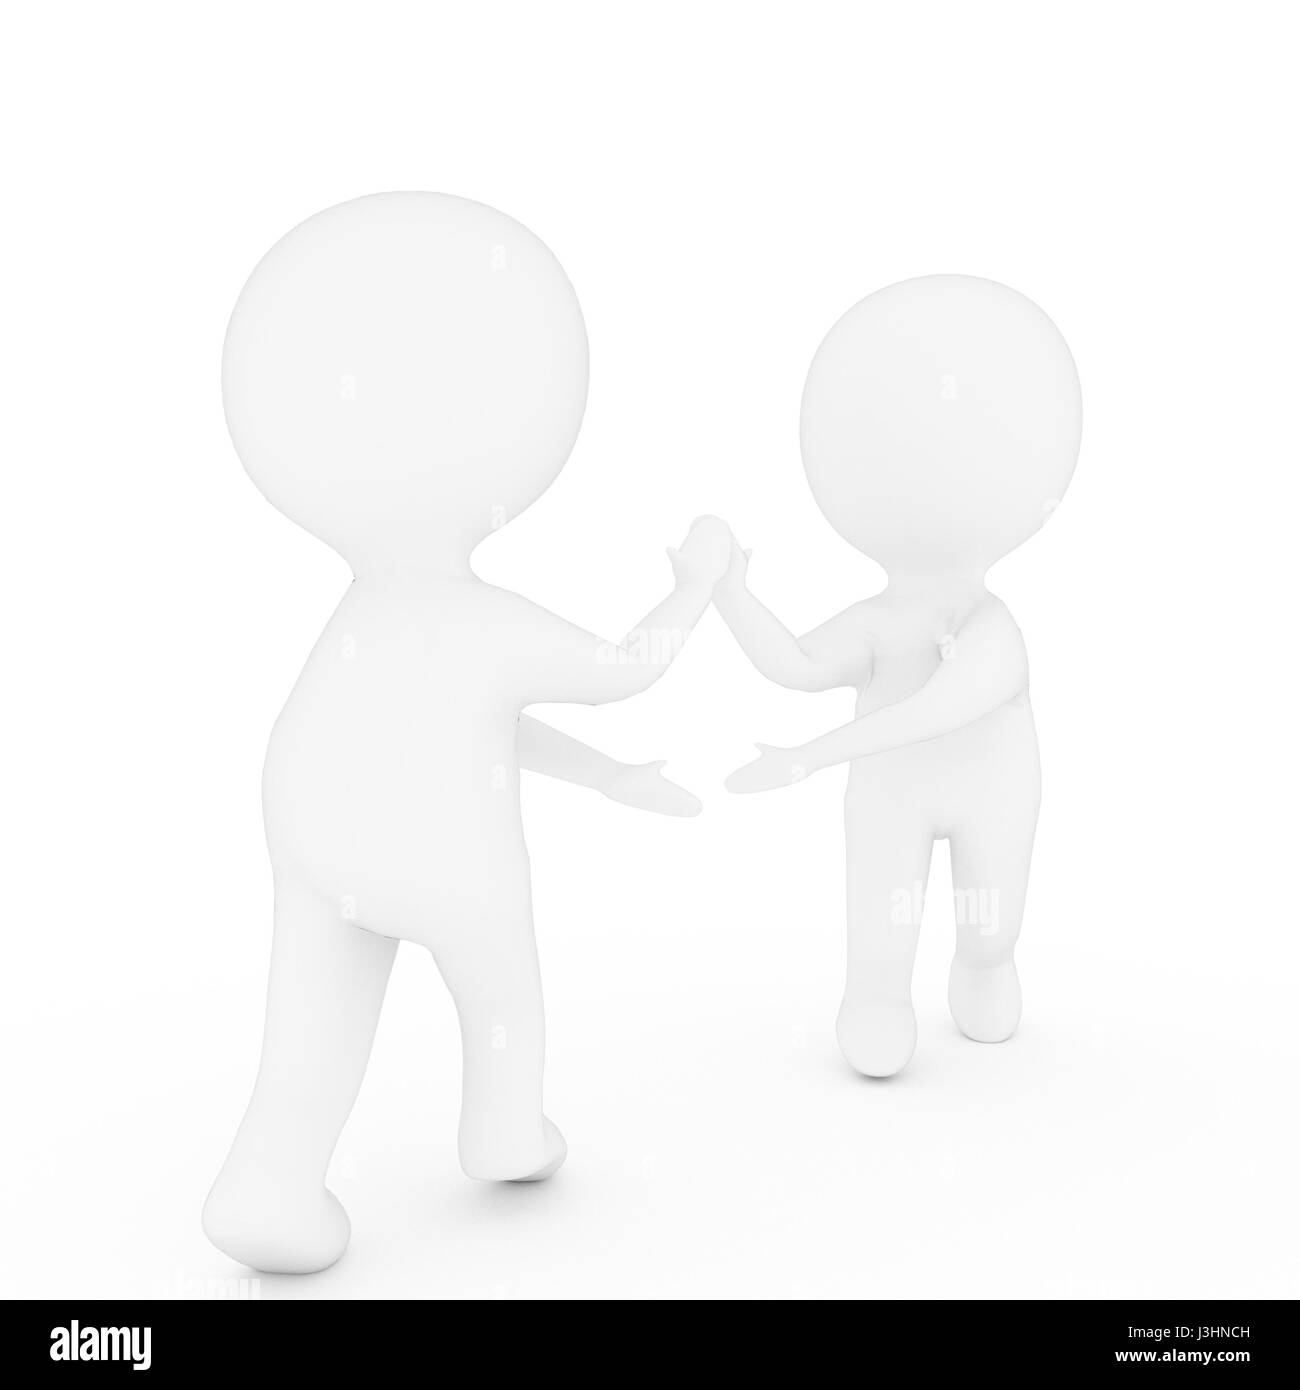 Petit deux personnes qui se serrent la main isolées sur fond blanc dans le rendu 3D Banque D'Images